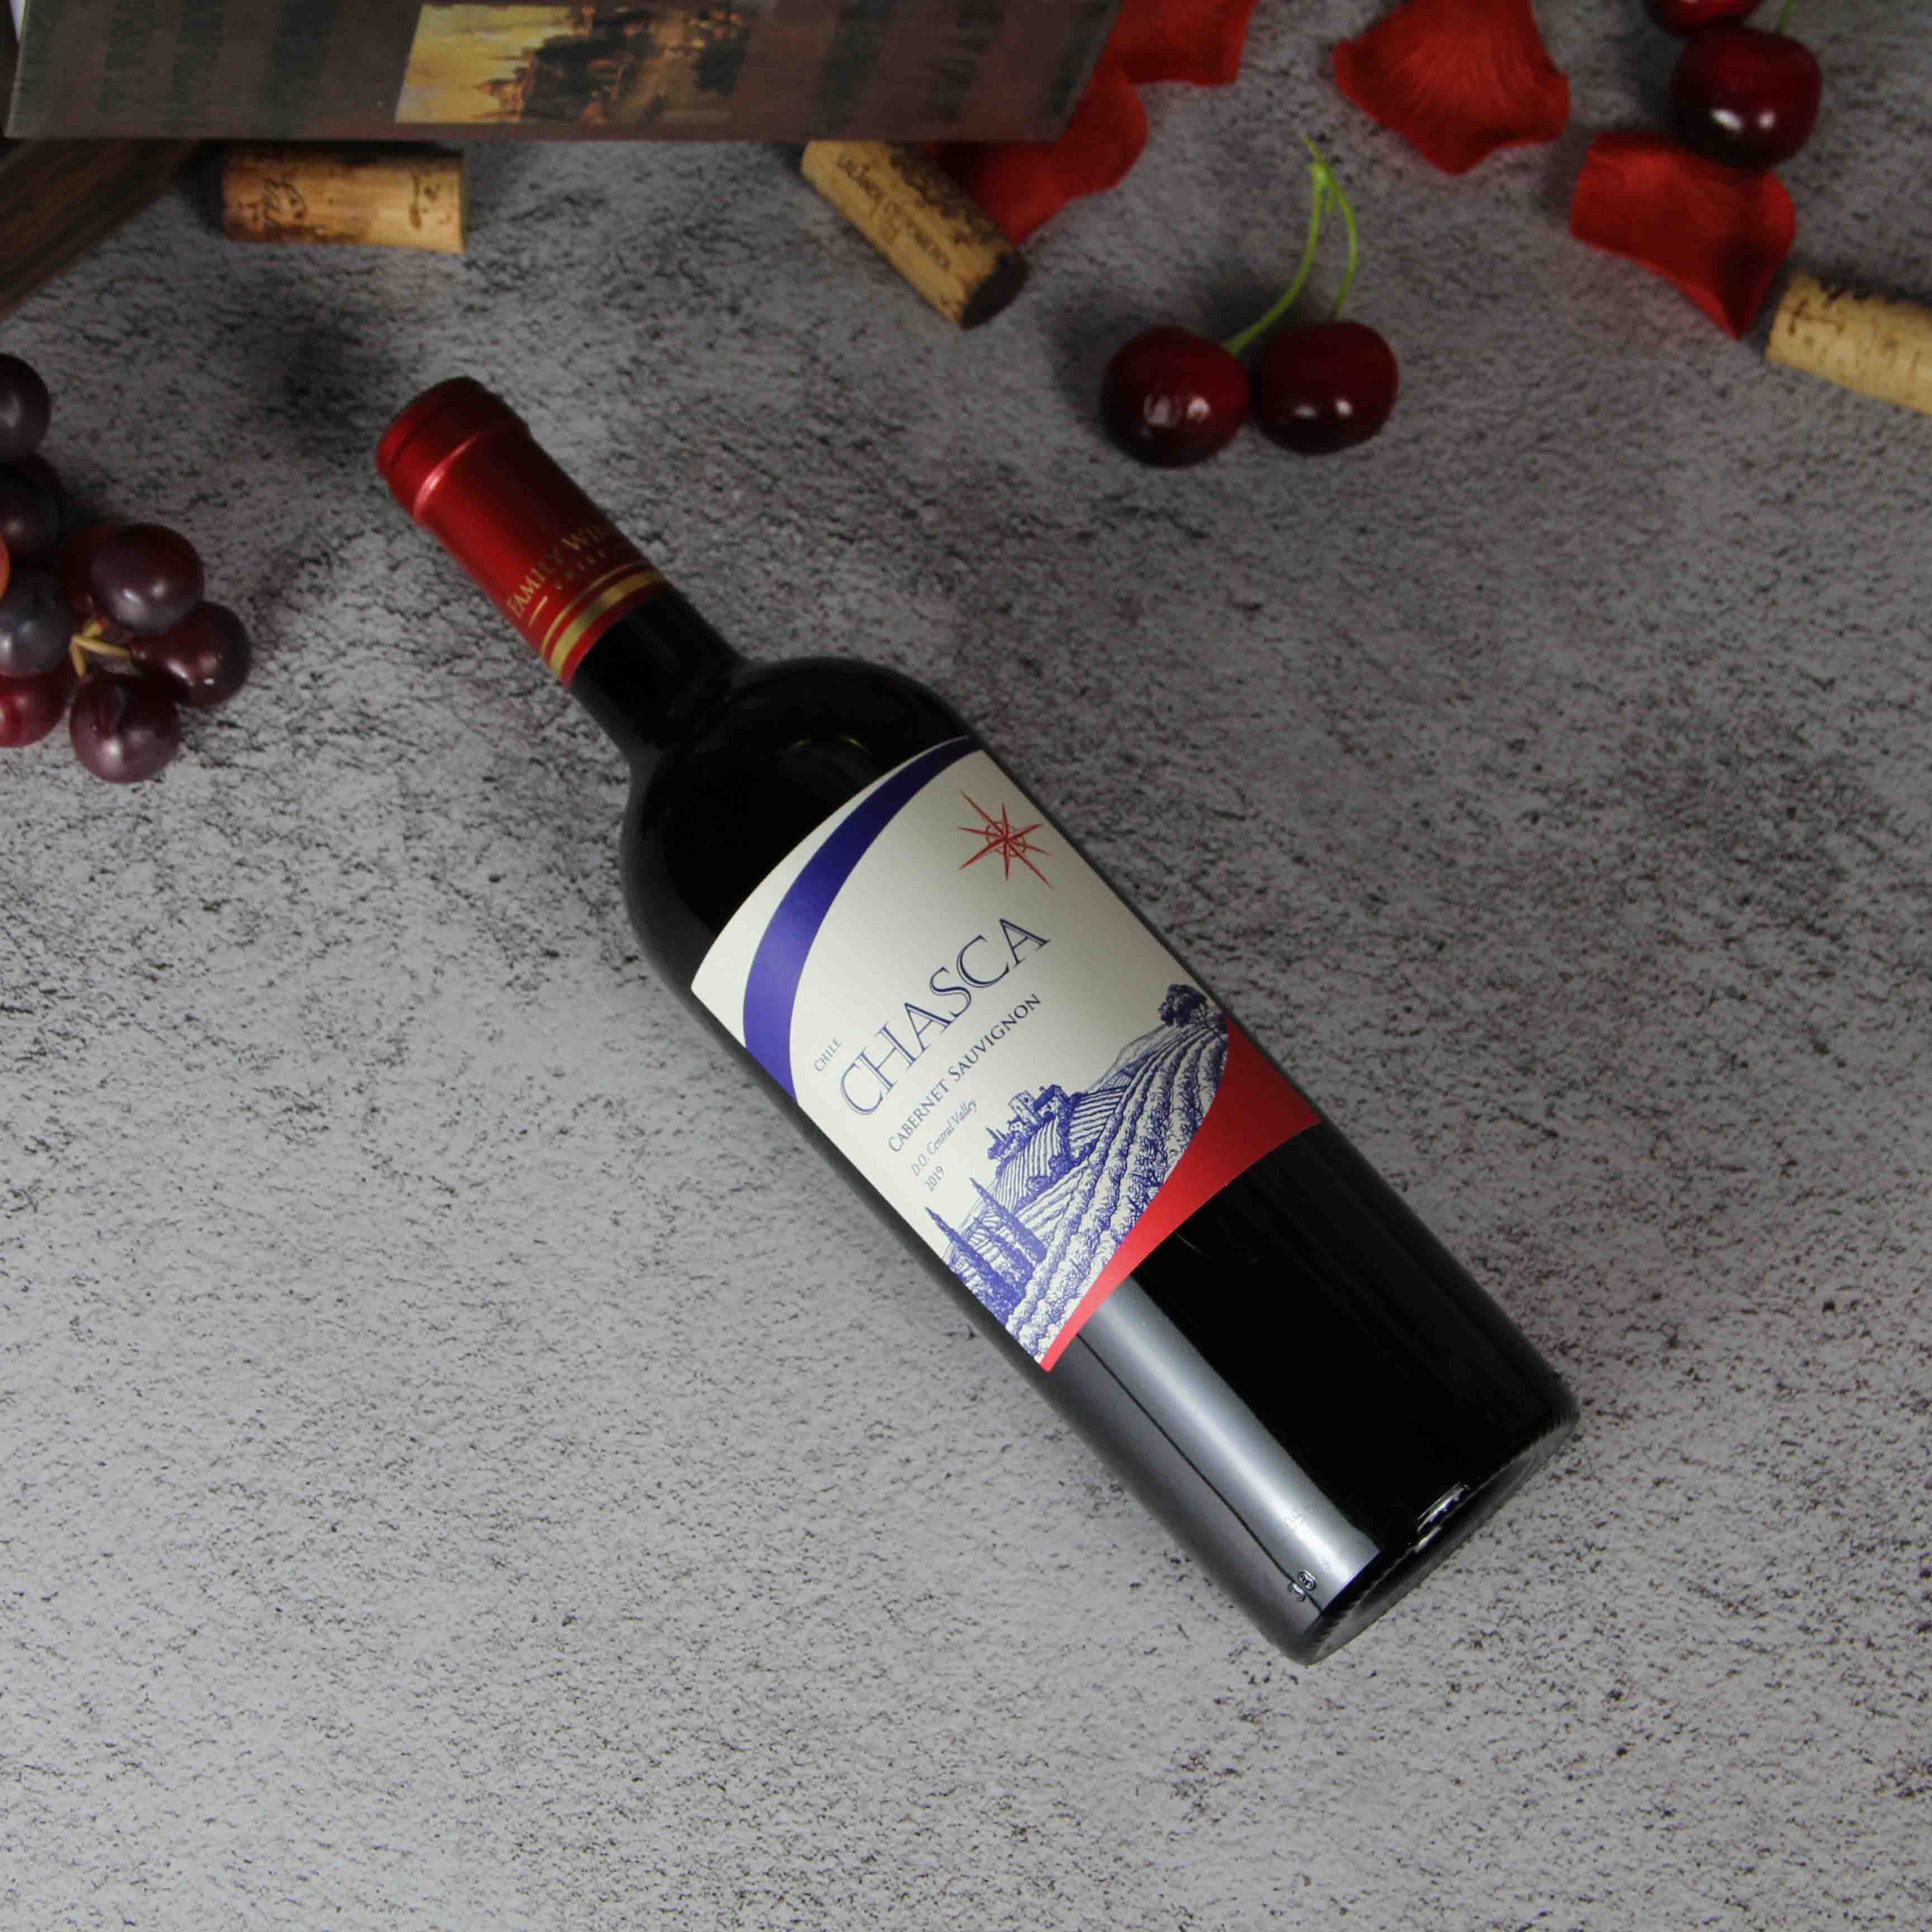 智利中央山谷智利之星赤霞珠干红葡萄酒